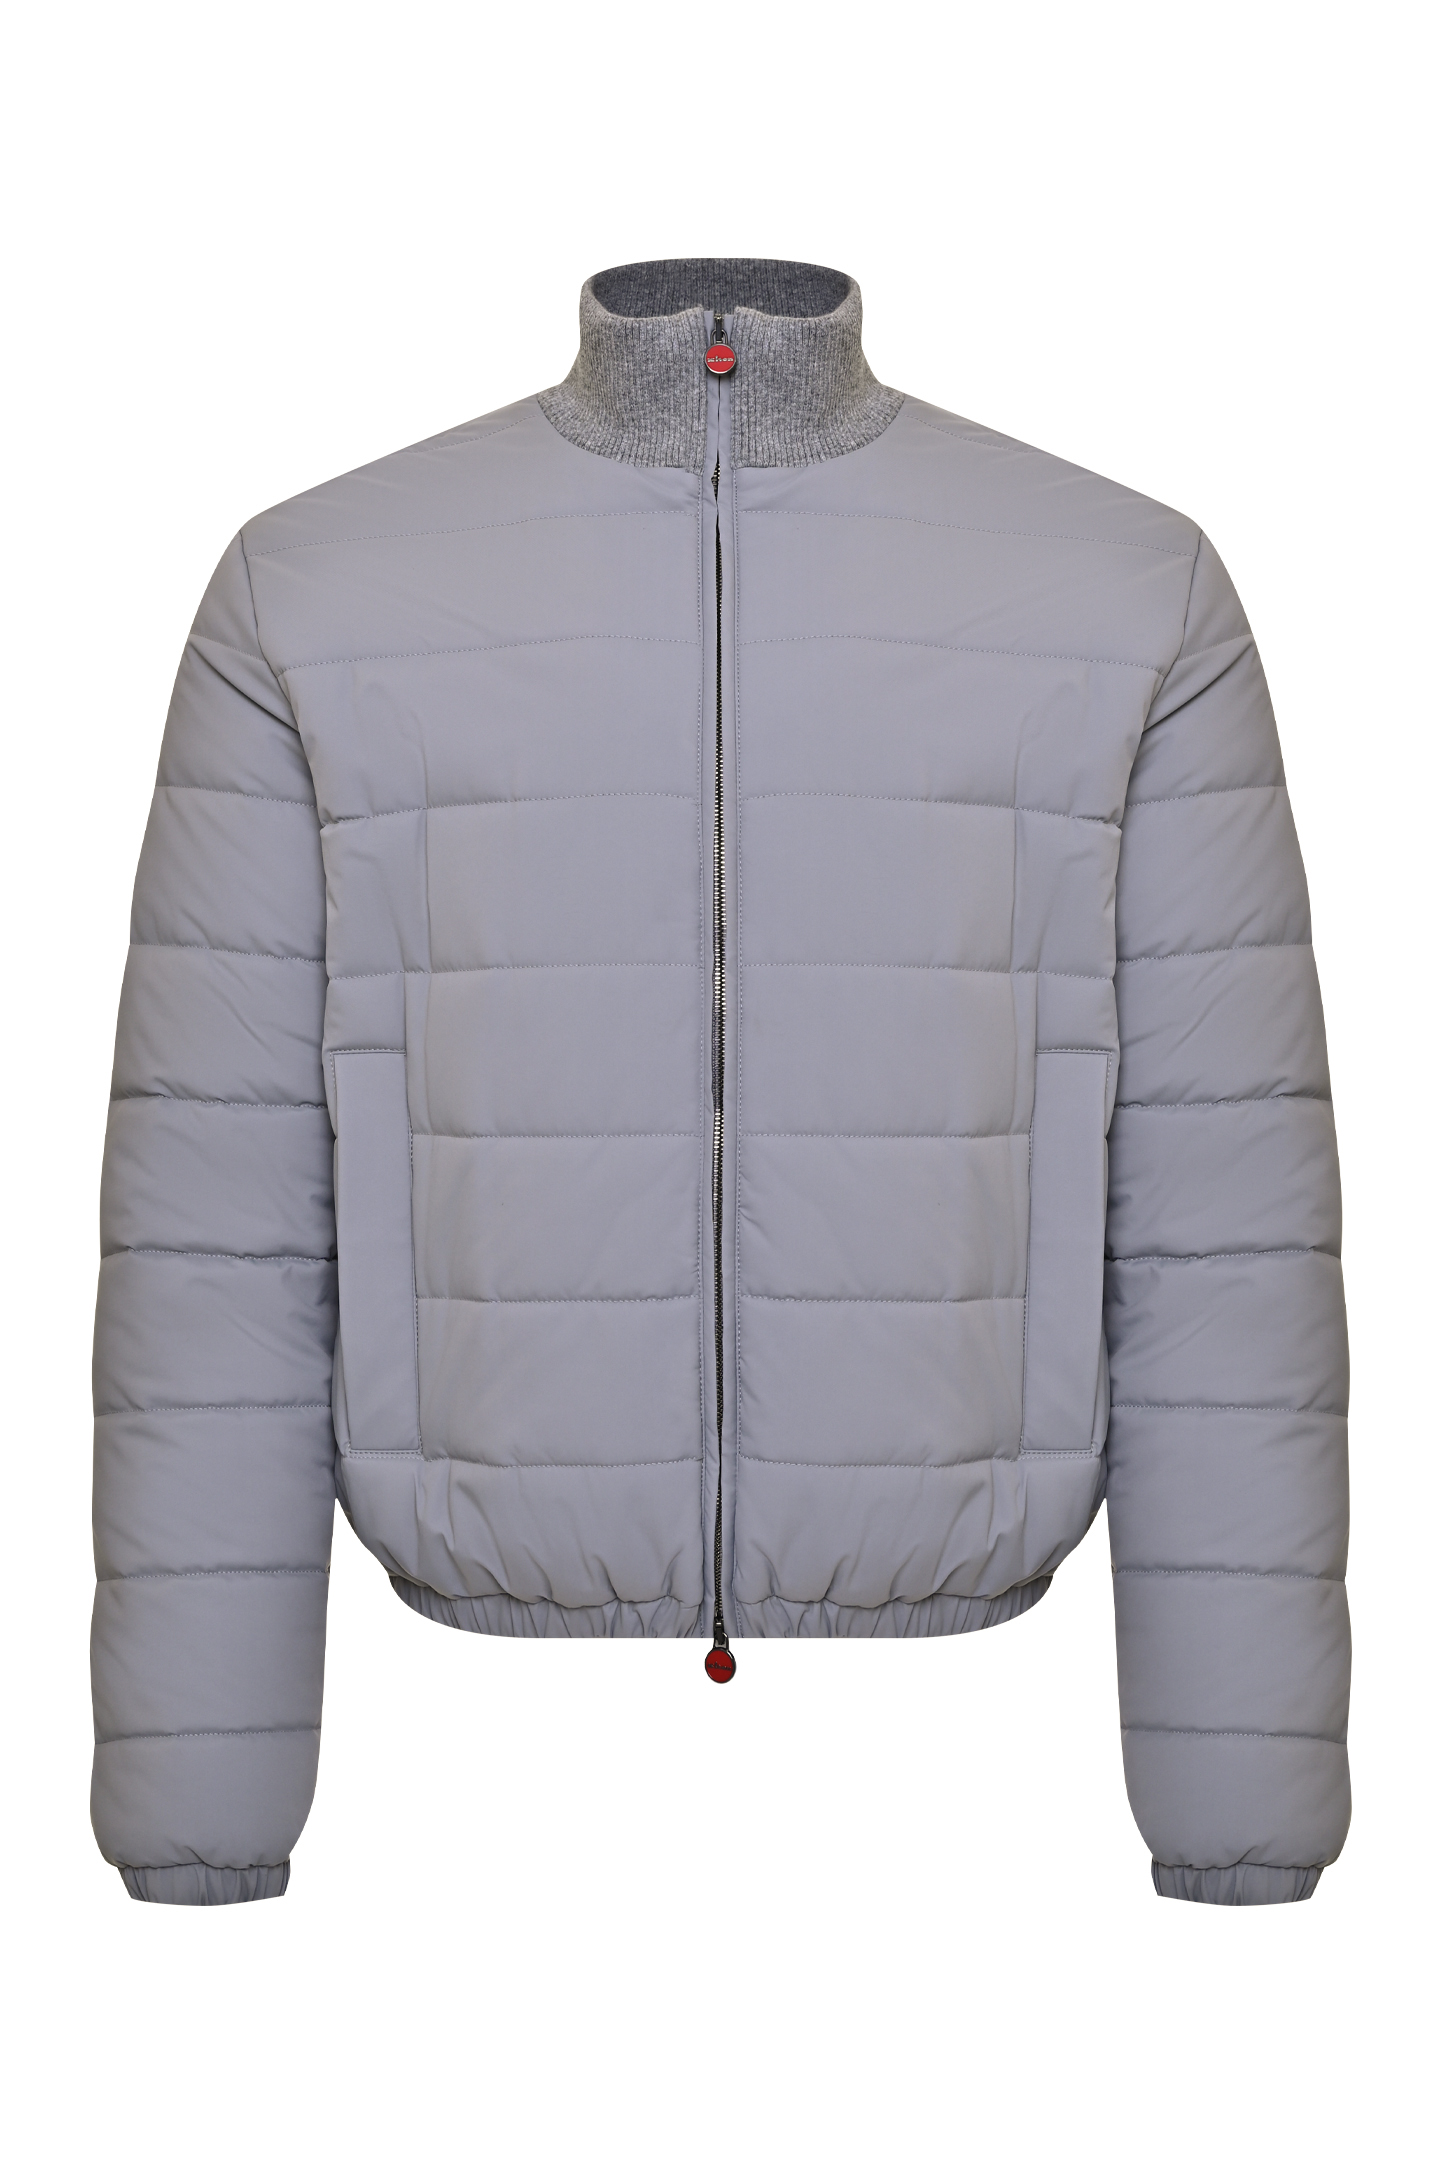 Куртка KITON UW1264AV0388B0, цвет: Серый, Мужской